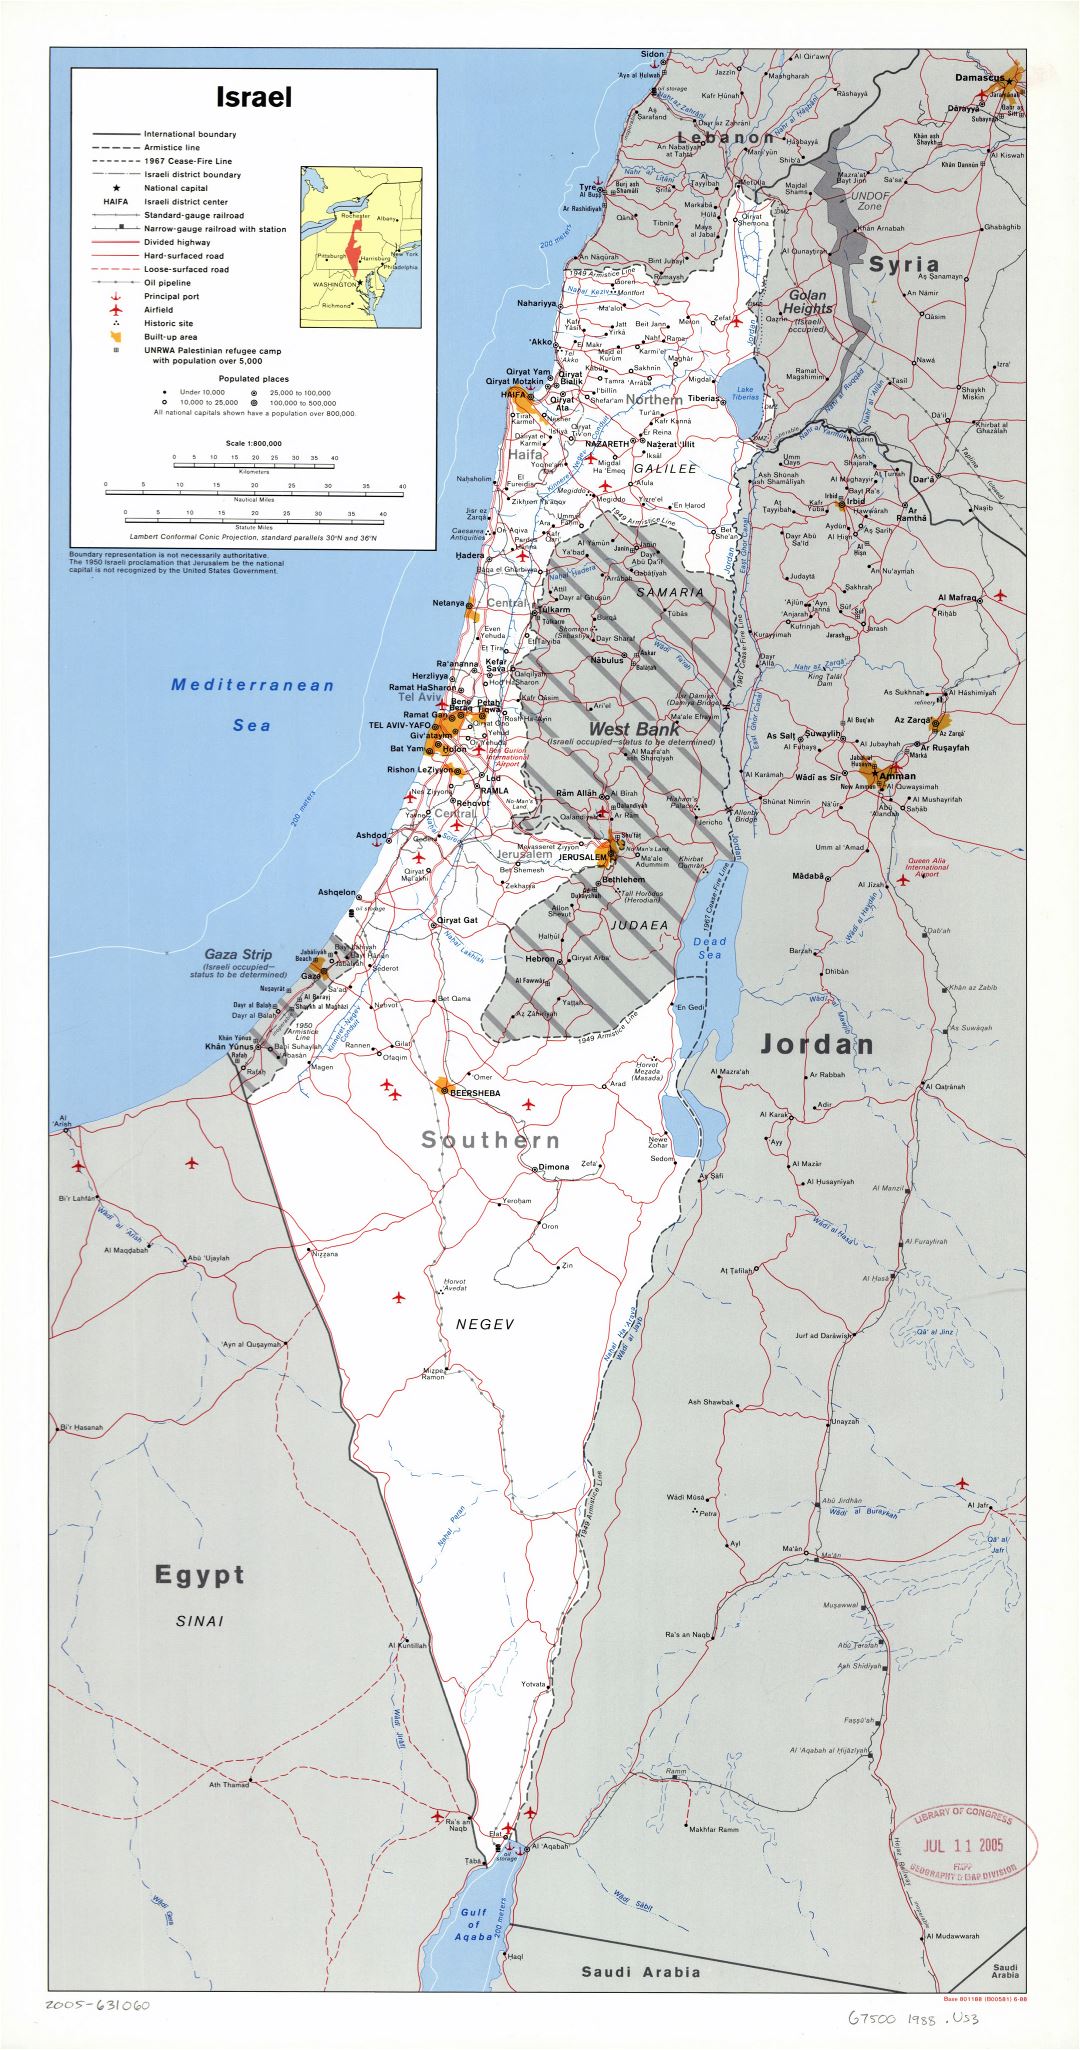 Крупномасштабная политическая и административная карта Израиля с дорогами, железными дорогами, городами, портами, аэропортами и другими пометками - 1988